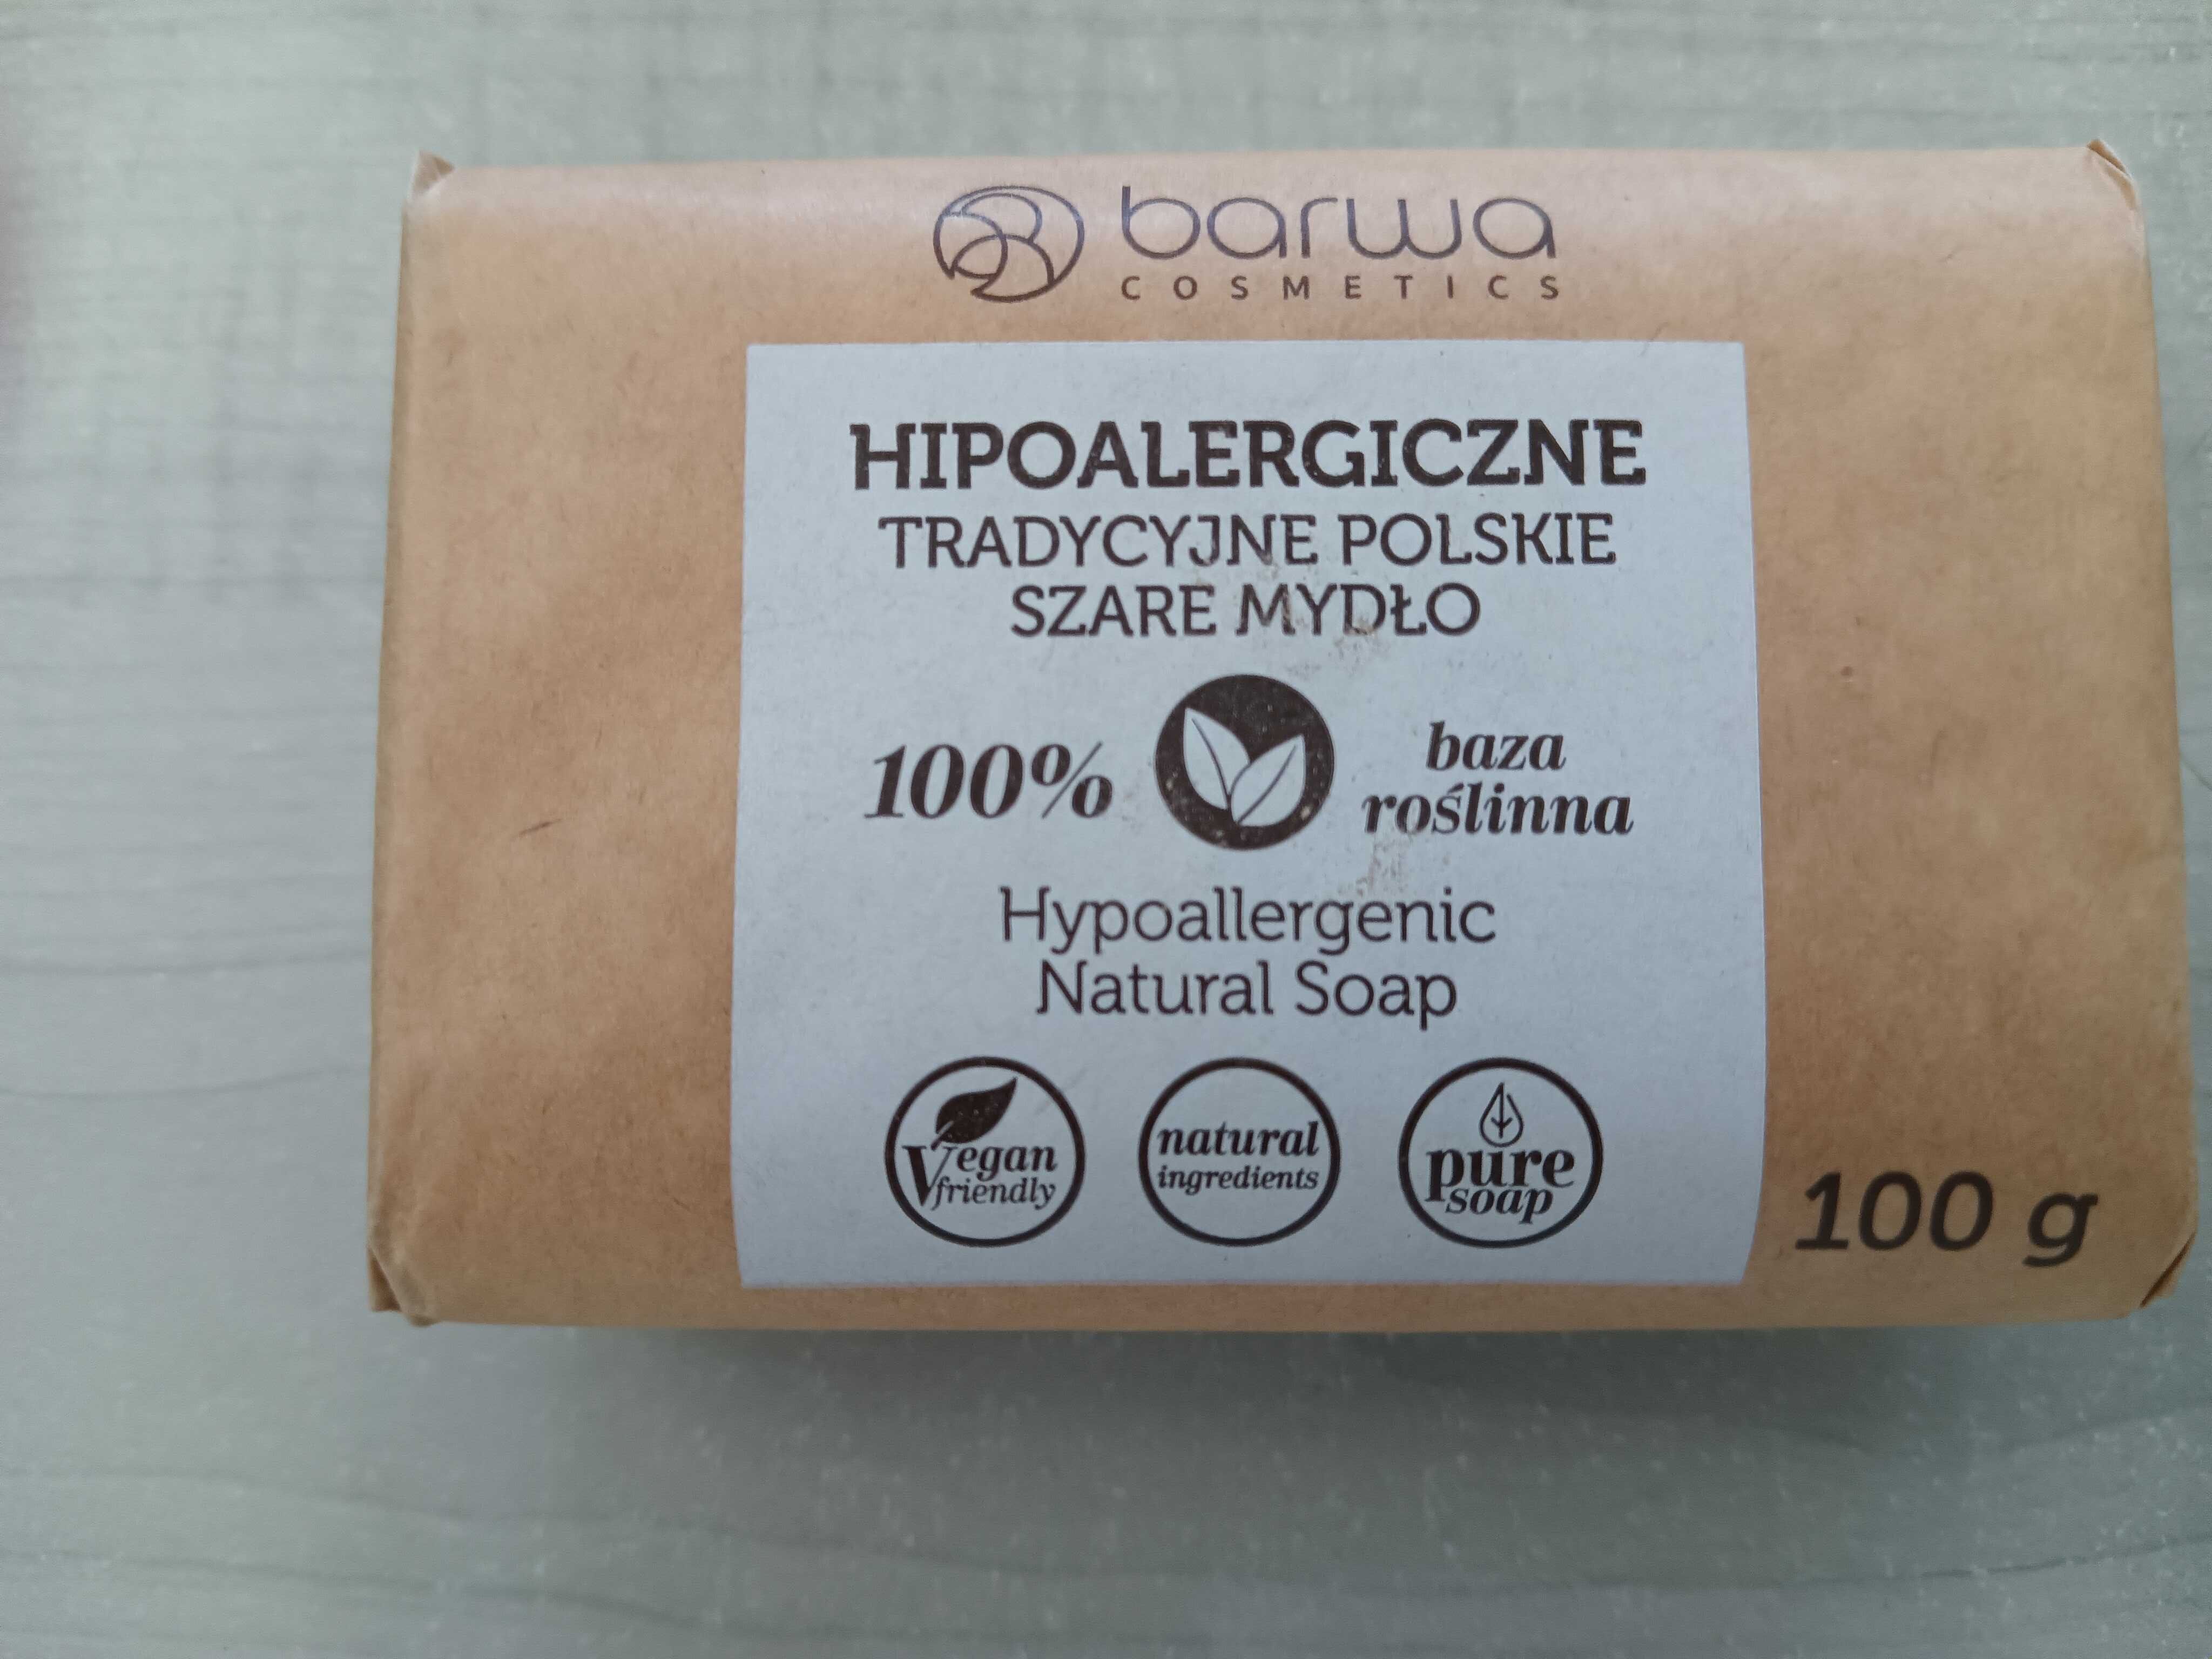 Hypoalergiczne szare tradycyjne polskie mydło kostka 100g